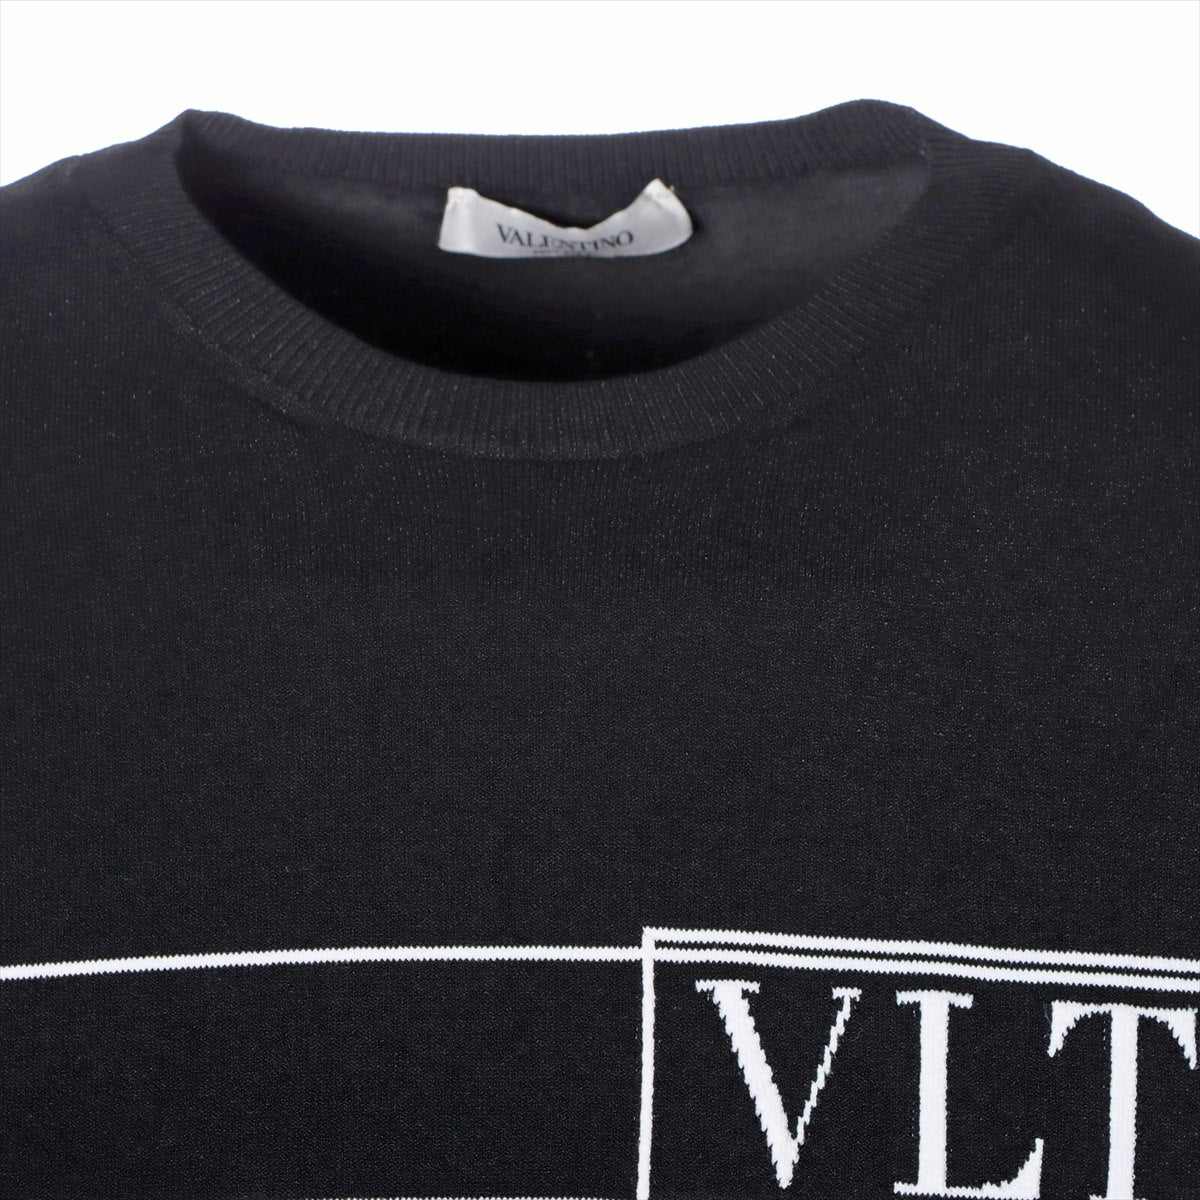 ヴァレンティノ ポリエステル×レーヨン ニット S メンズ ブラック  ロゴ刺繍クルーネック VV3KC12Y75V